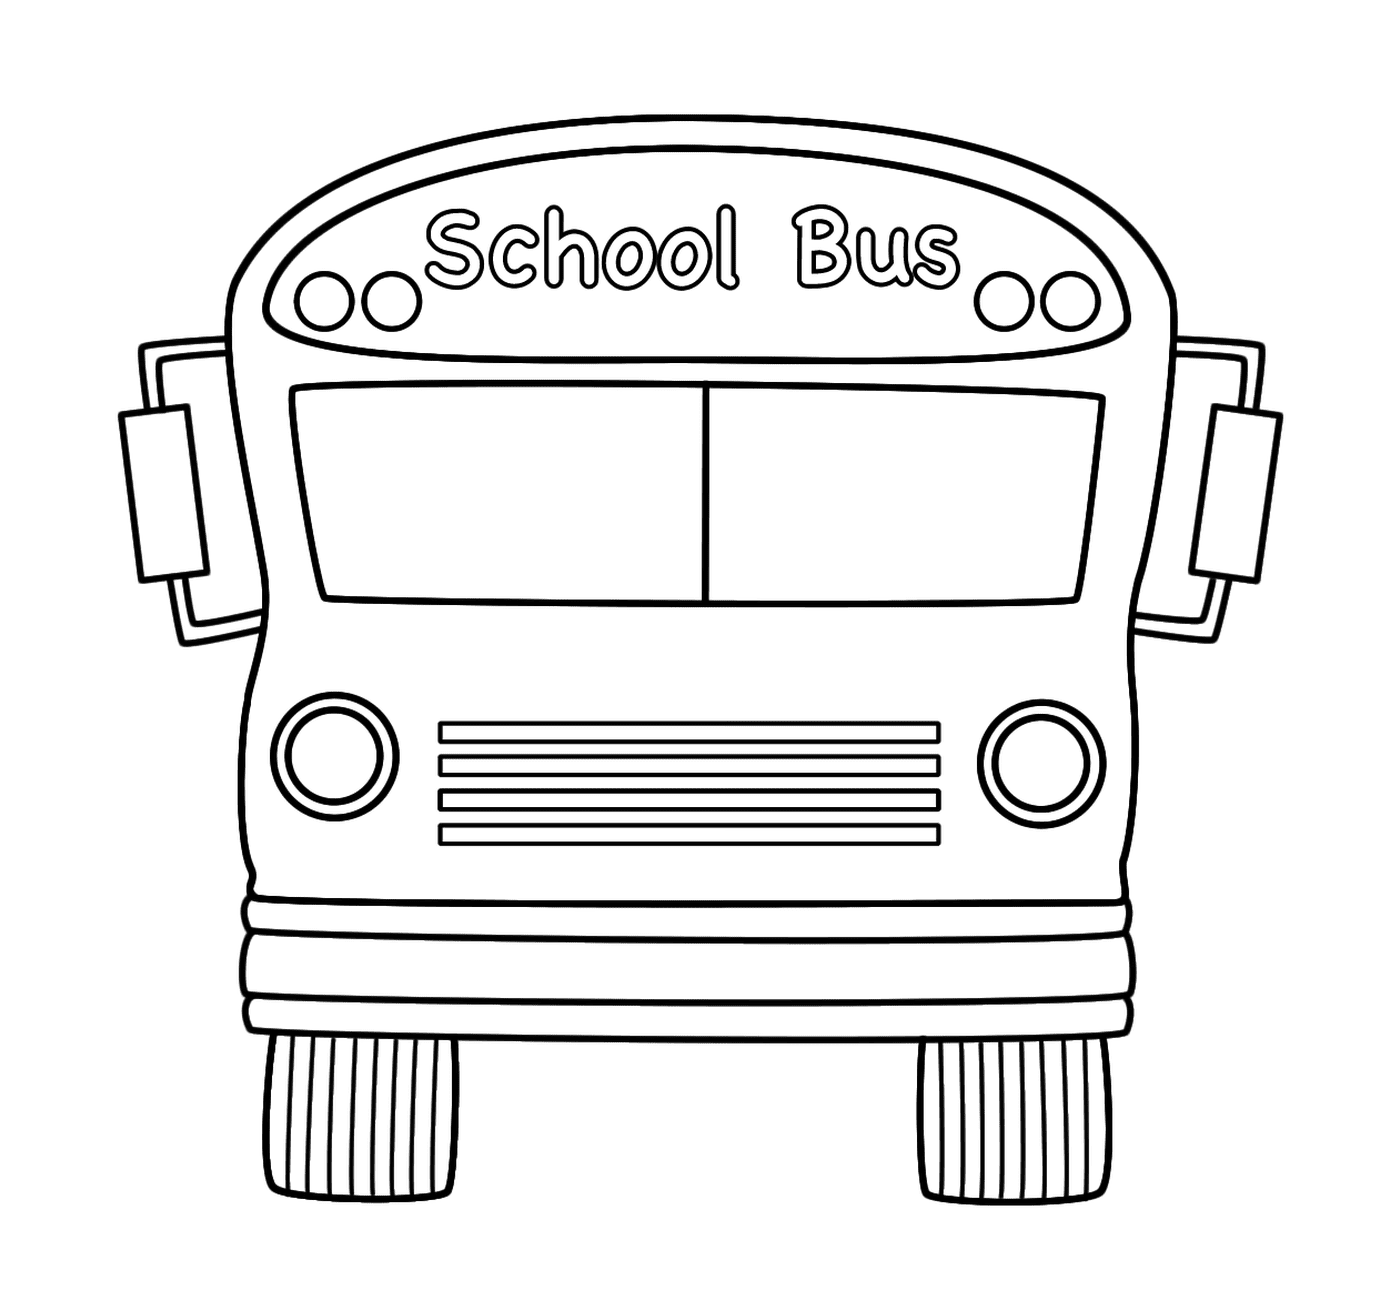   Un bus scolaire se prépare à partir 